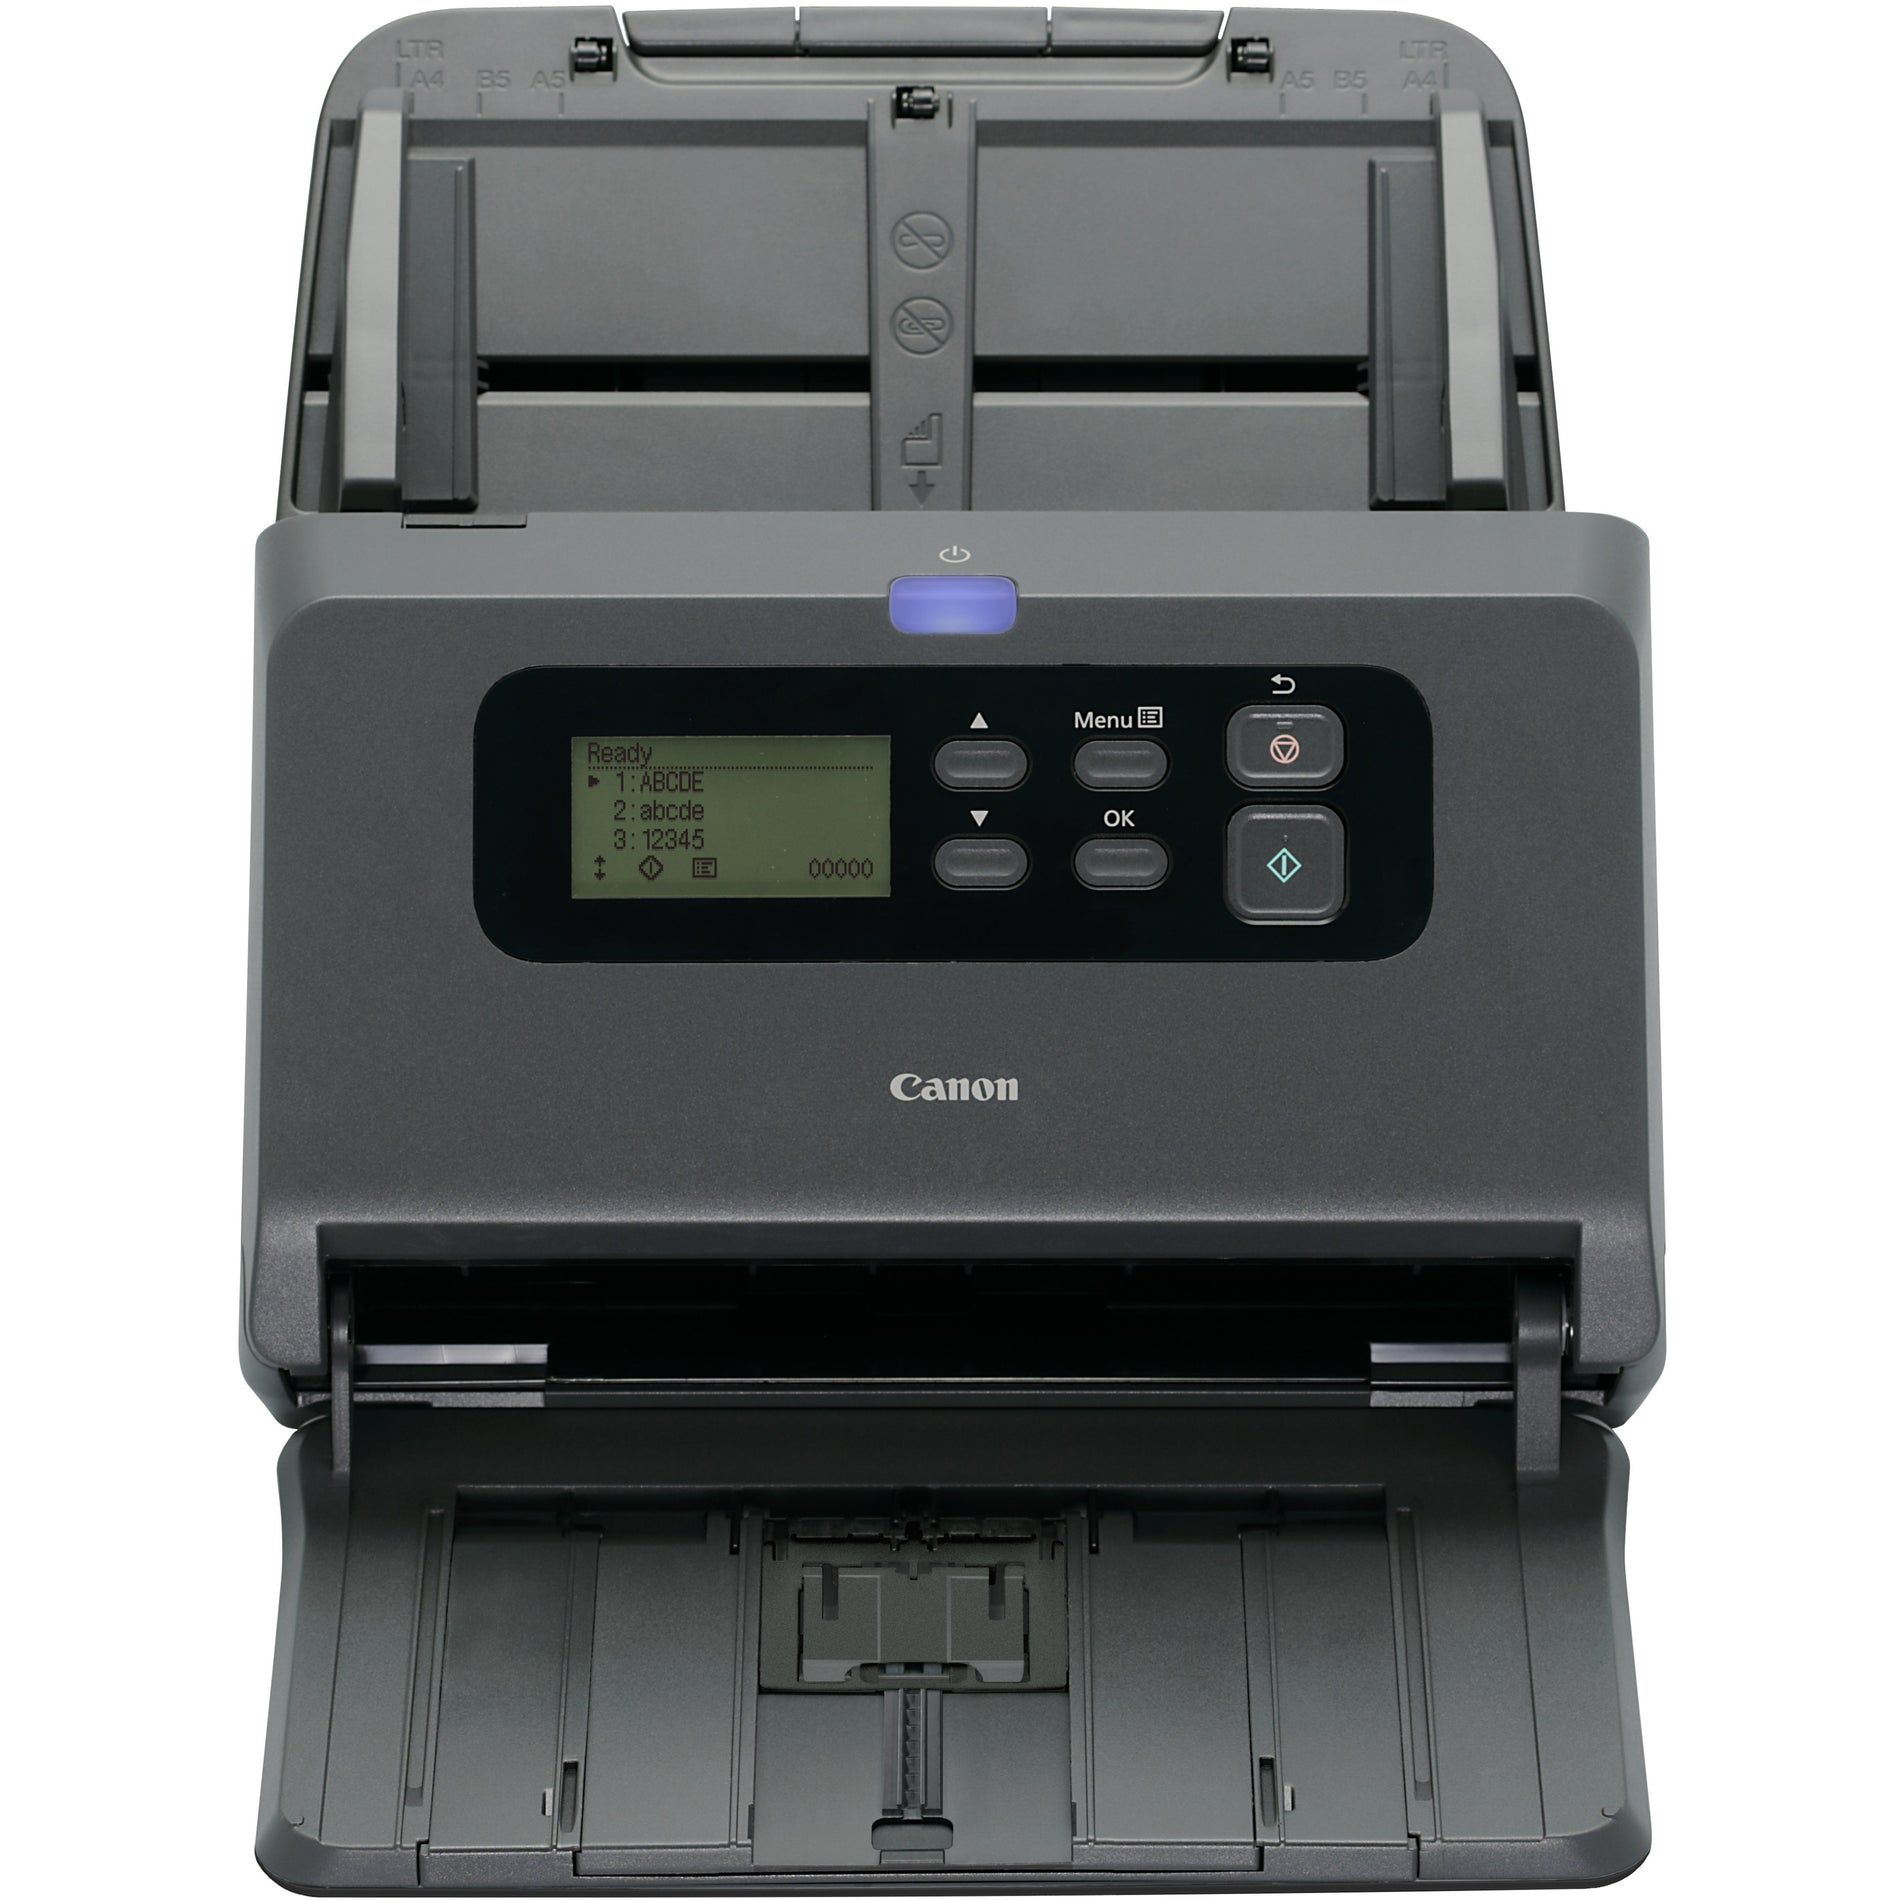 Canon Office Document Scanner, 600 dpi, 80-Sht Capacity, Black (2405C002)